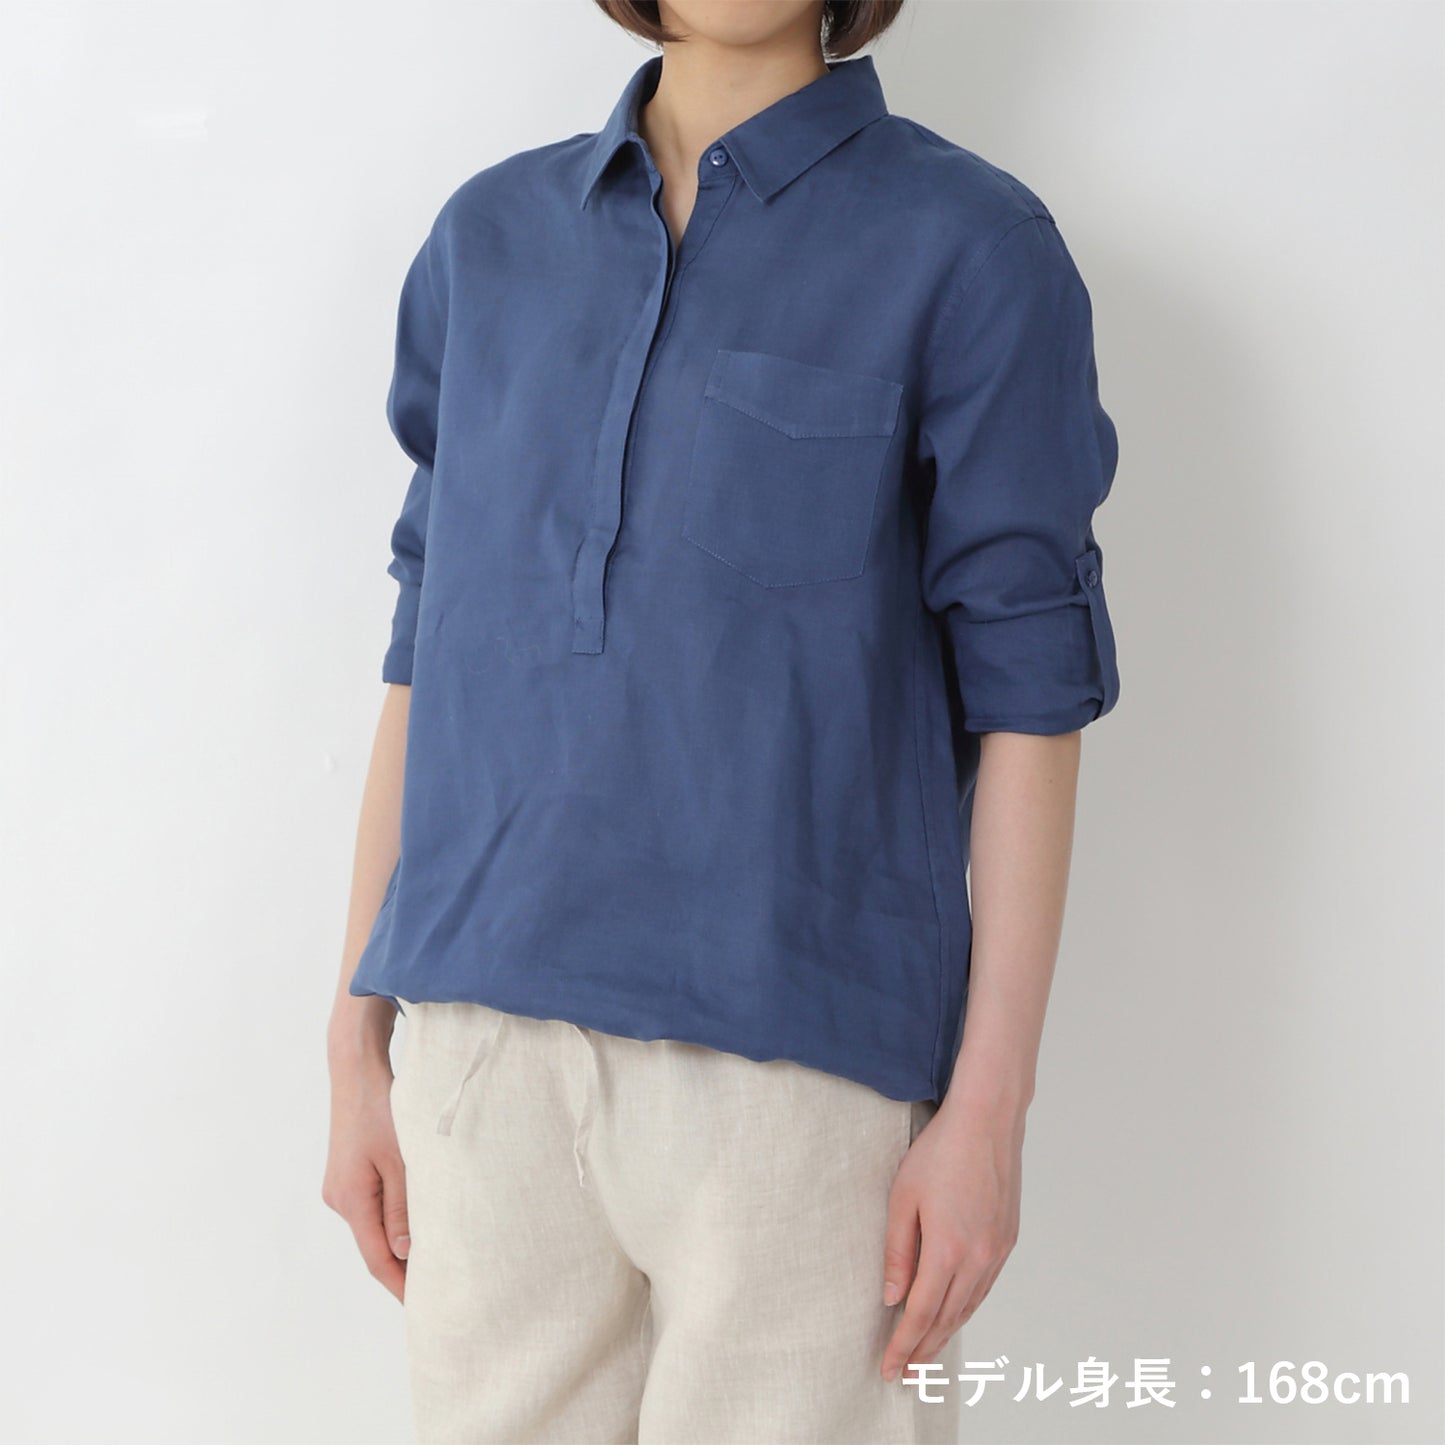 リネンプルオーバーシャツ(model:168cm 着用サイズ:SM)